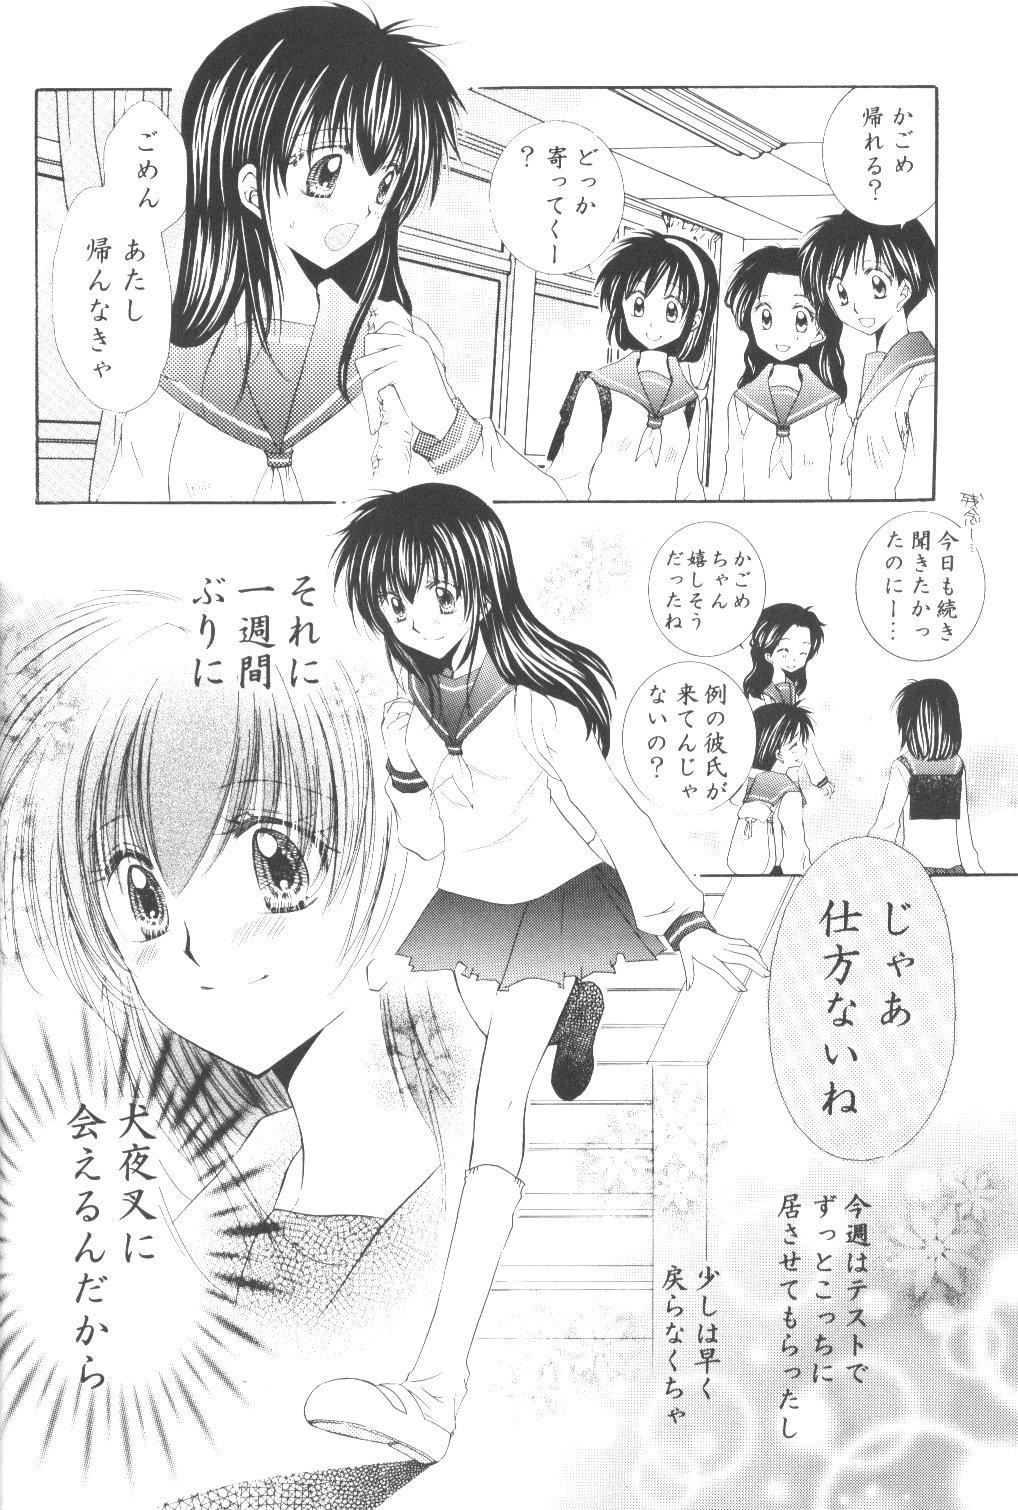 Beauty Ryuusei Ryodan - Inuyasha Twinkstudios - Page 8